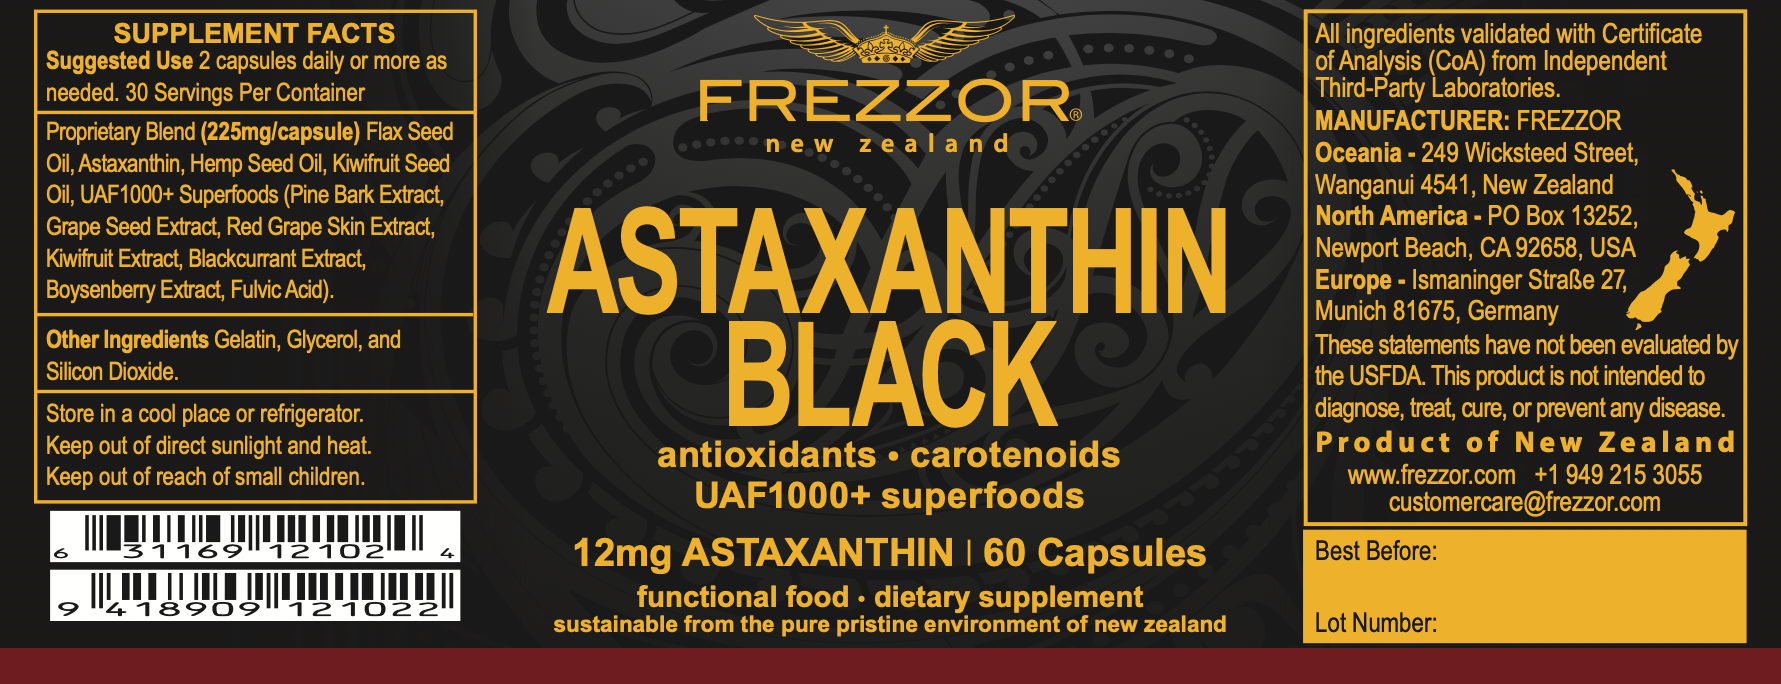 Astaxanthin Black  FREZZOR Best Natural Astaxanthin Capsules Supplement Brand NZ 